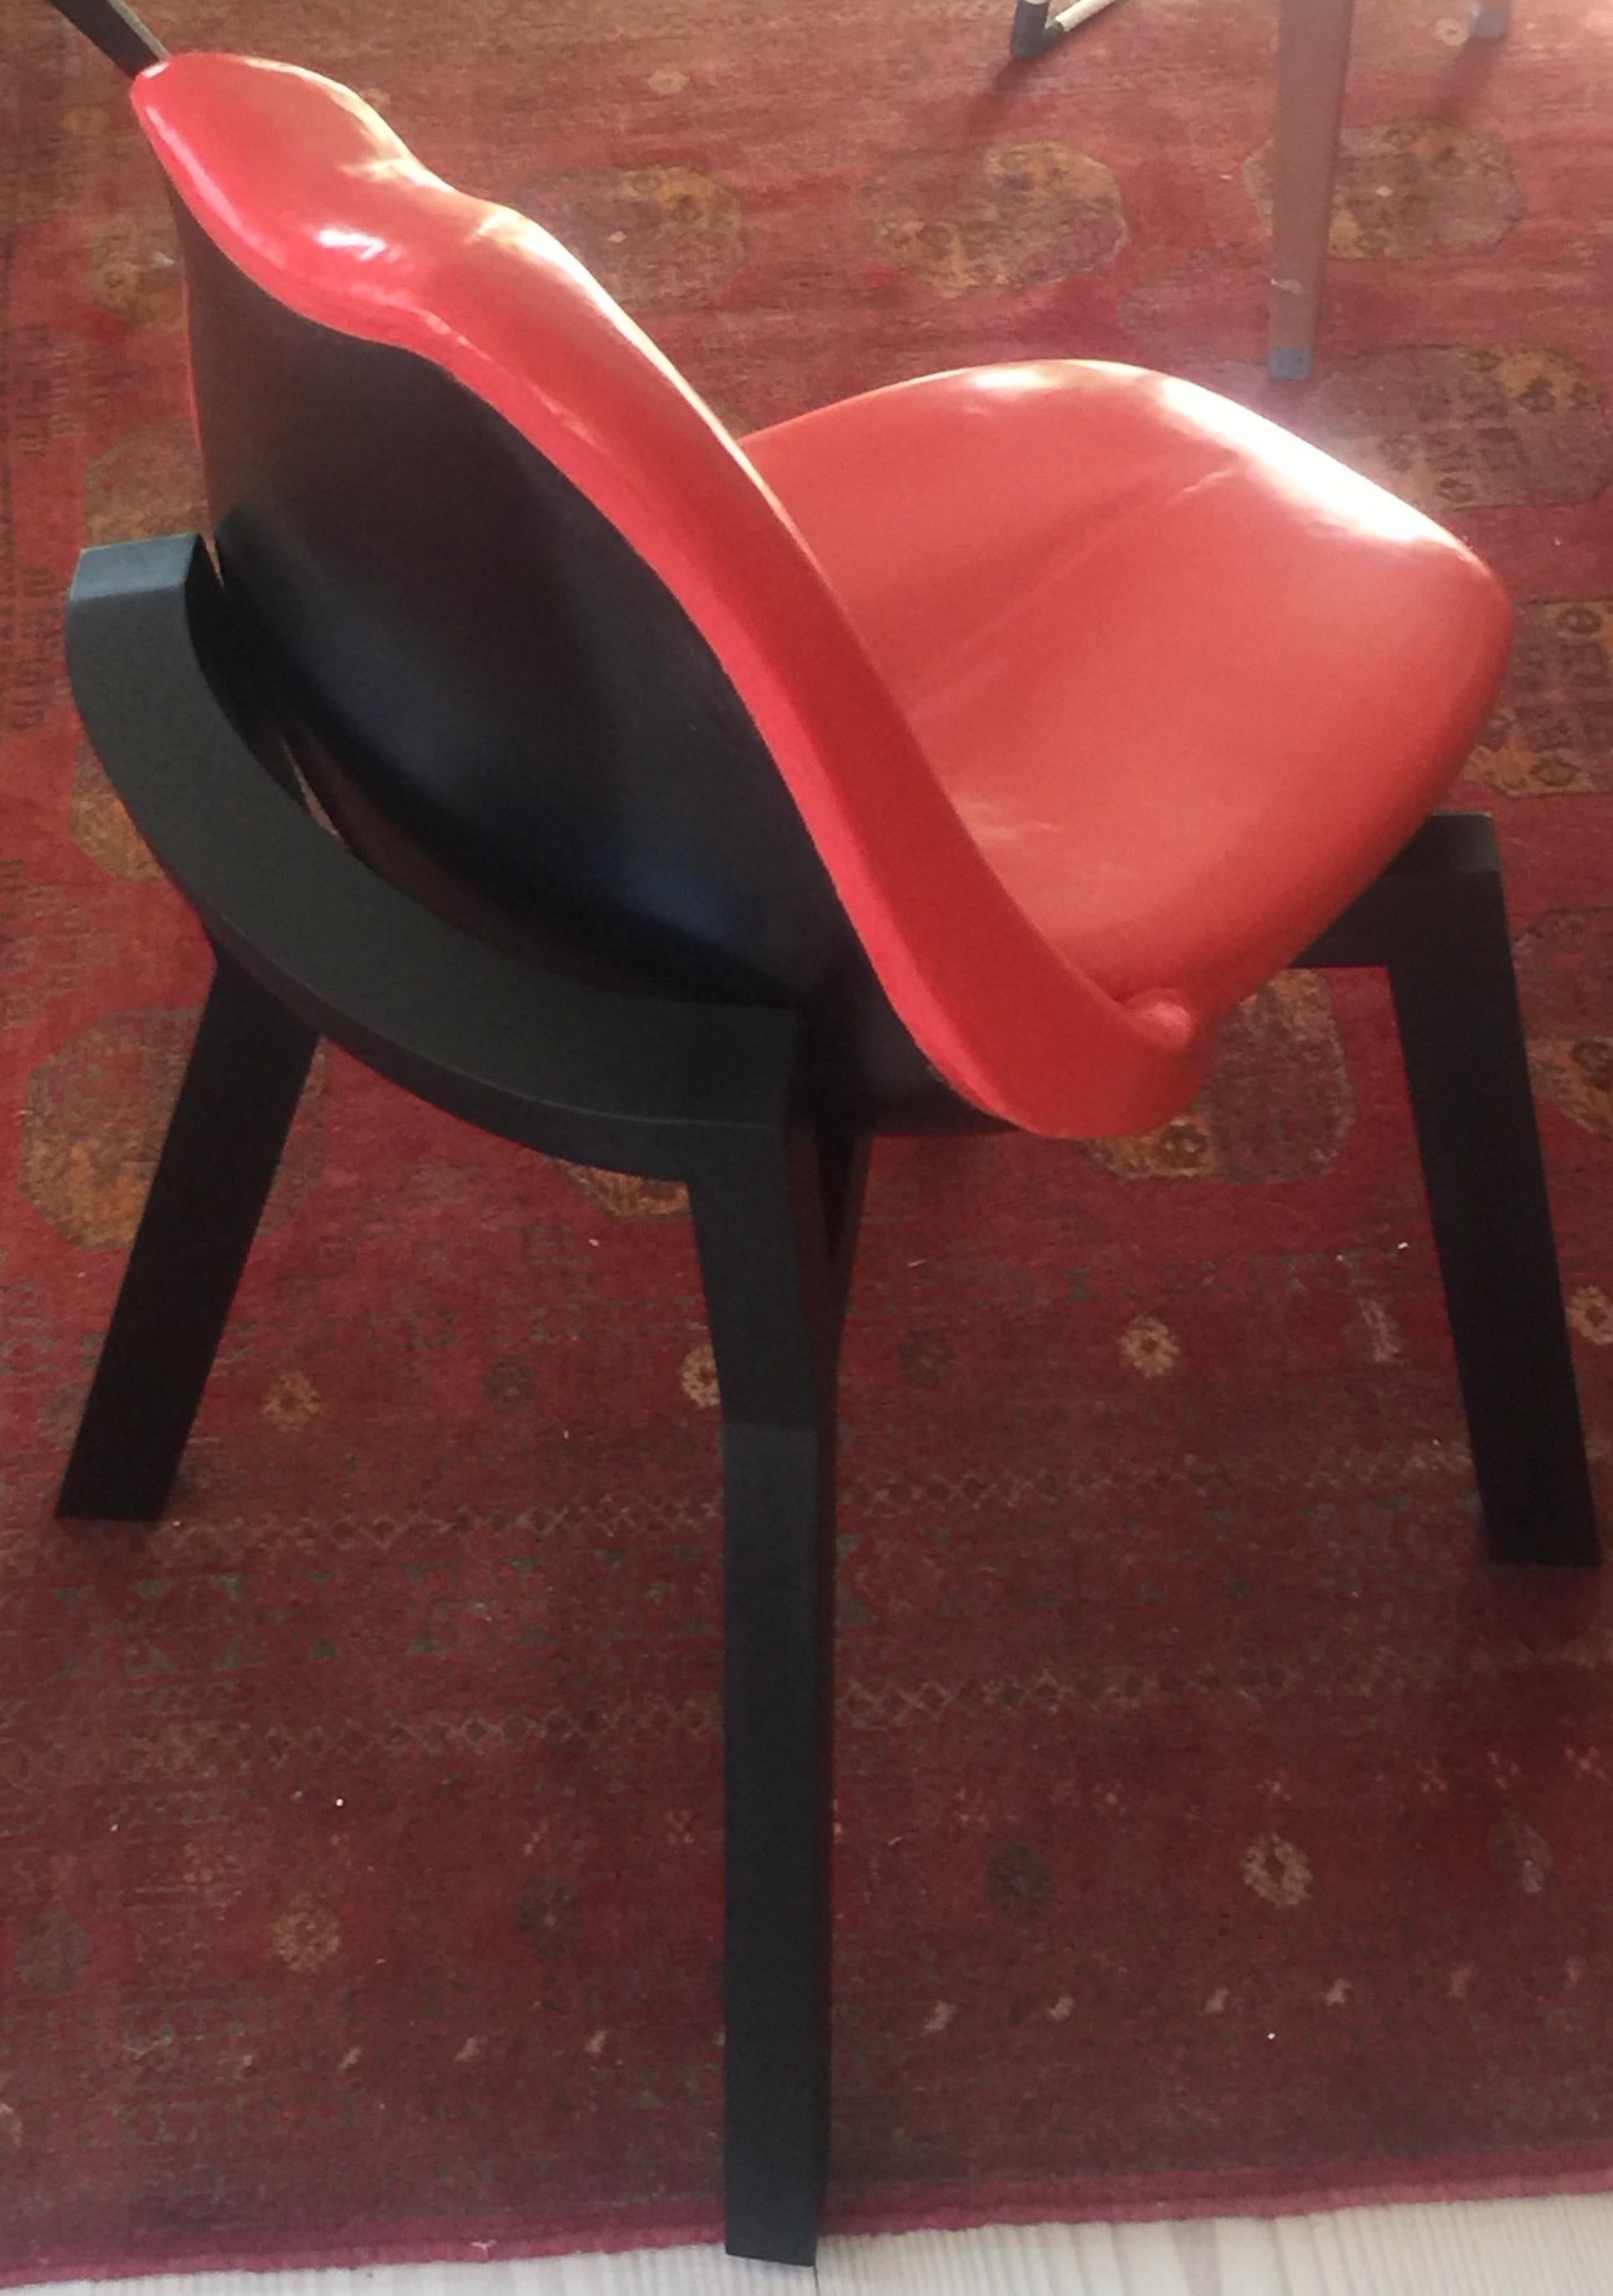 La chaise Tongue and lip fabriquée à la main au Danemark 2021 par l'architecte danois Mogens Toft.
La chaise se compose d'un siège/dossier qui est une coque en fibre de verre recouverte d'une mousse de polyuréthane fraisée en 3D qui donne un siège